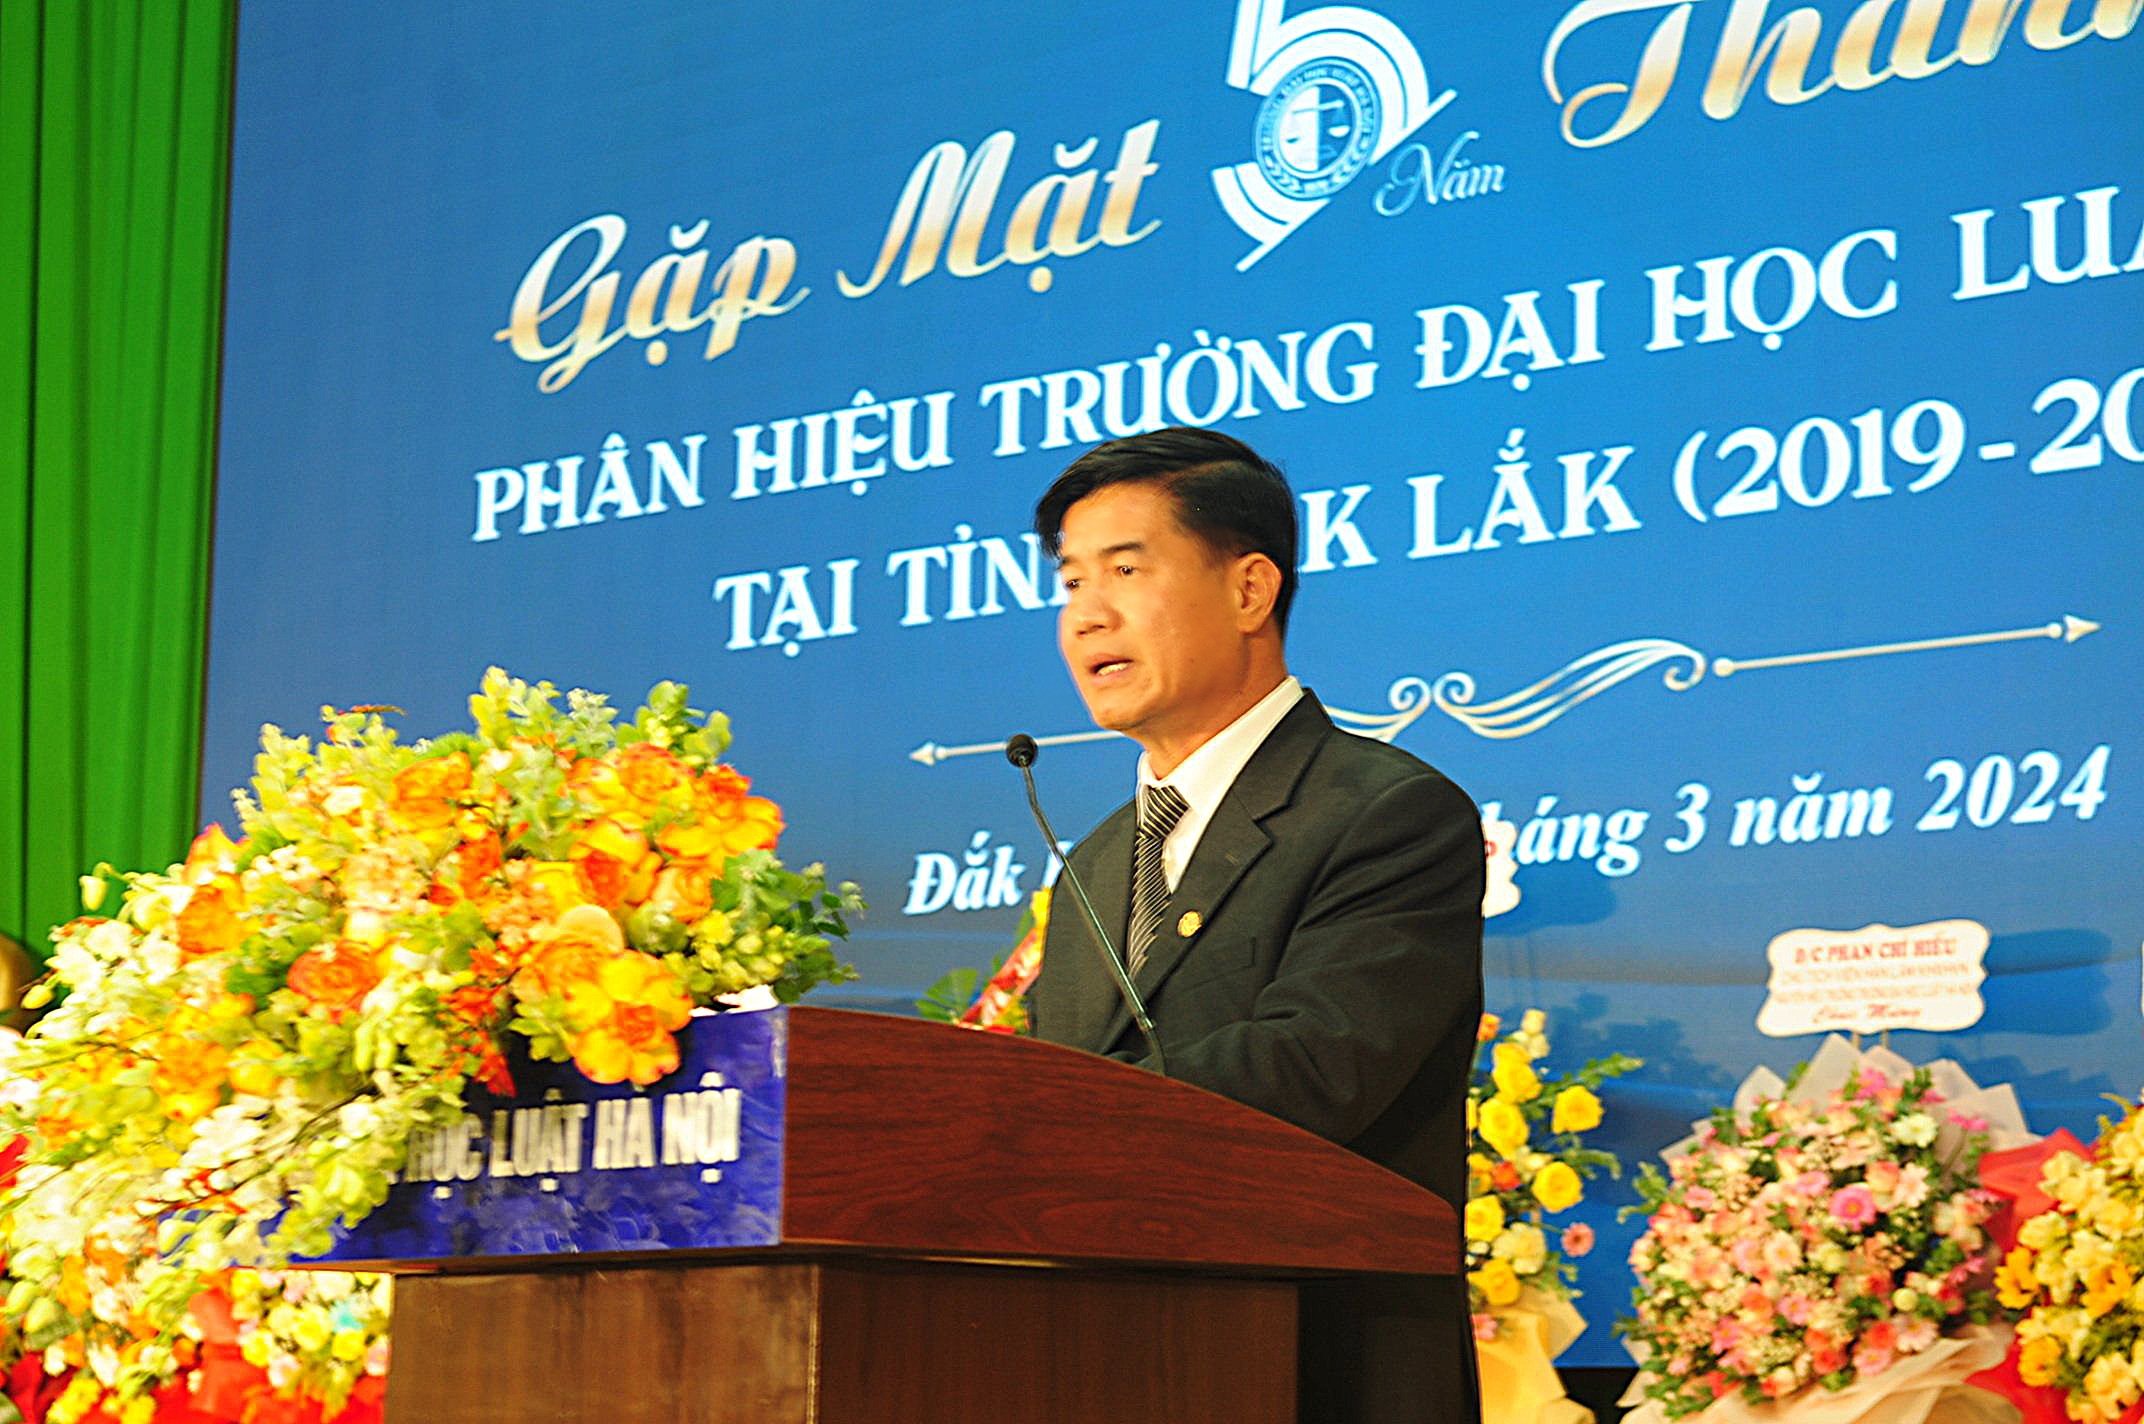 Bộ trưởng Lê Thành Long dự kỷ niệm 5 năm thành lập Trường Đại học Luật Hà Nội phân hiệu tại Đắk Lắk - Ảnh 3.